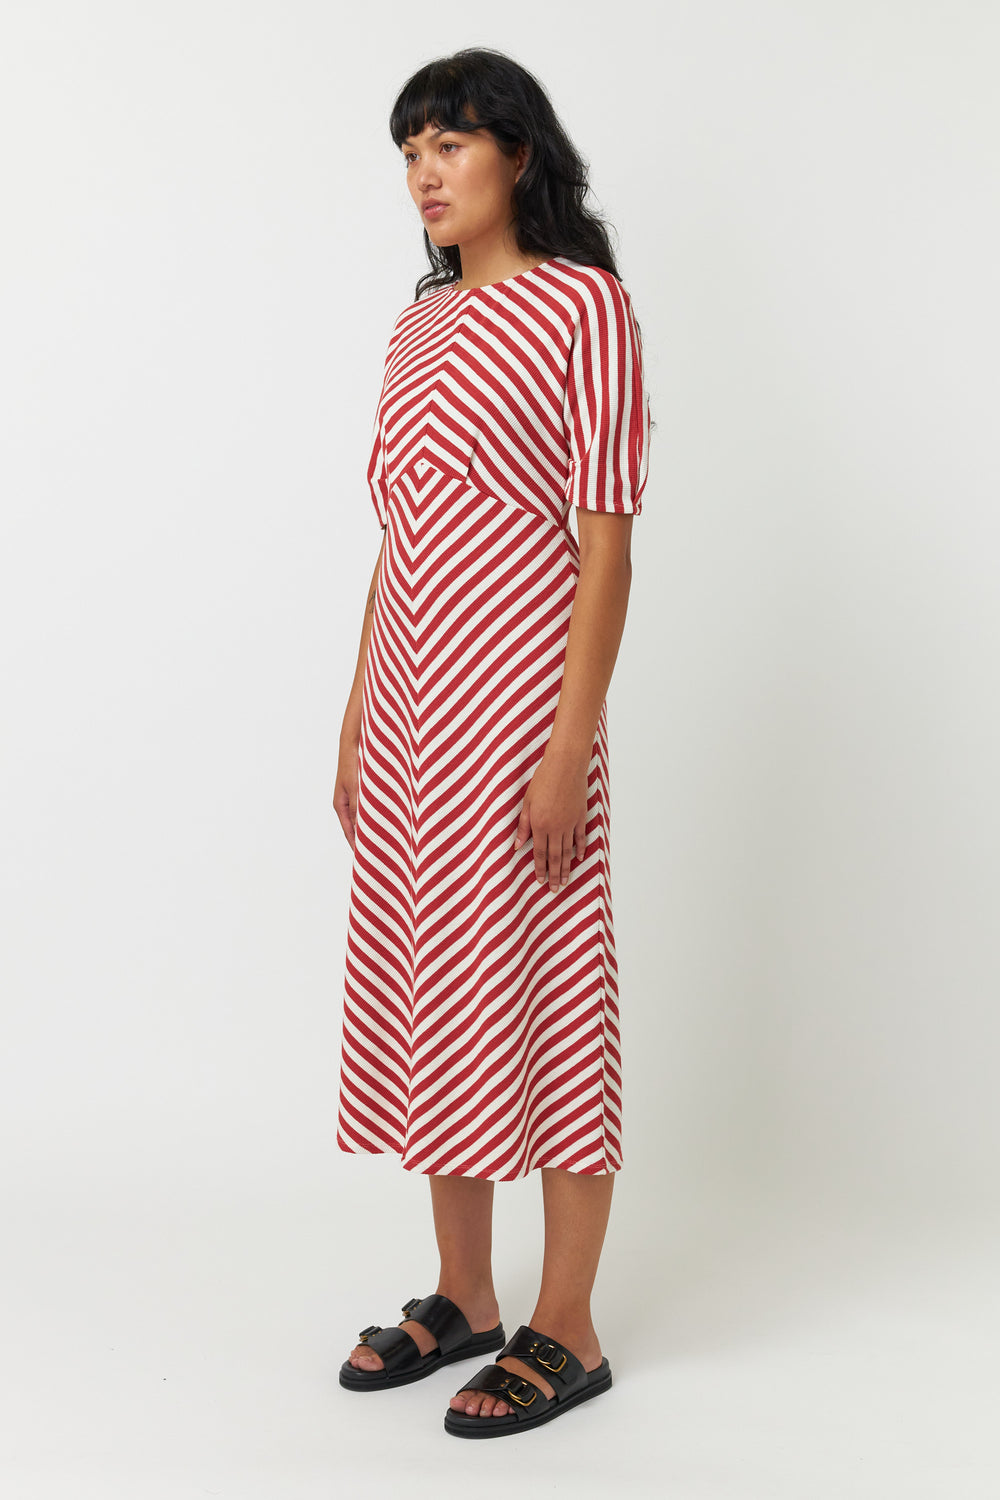 Stripey dress